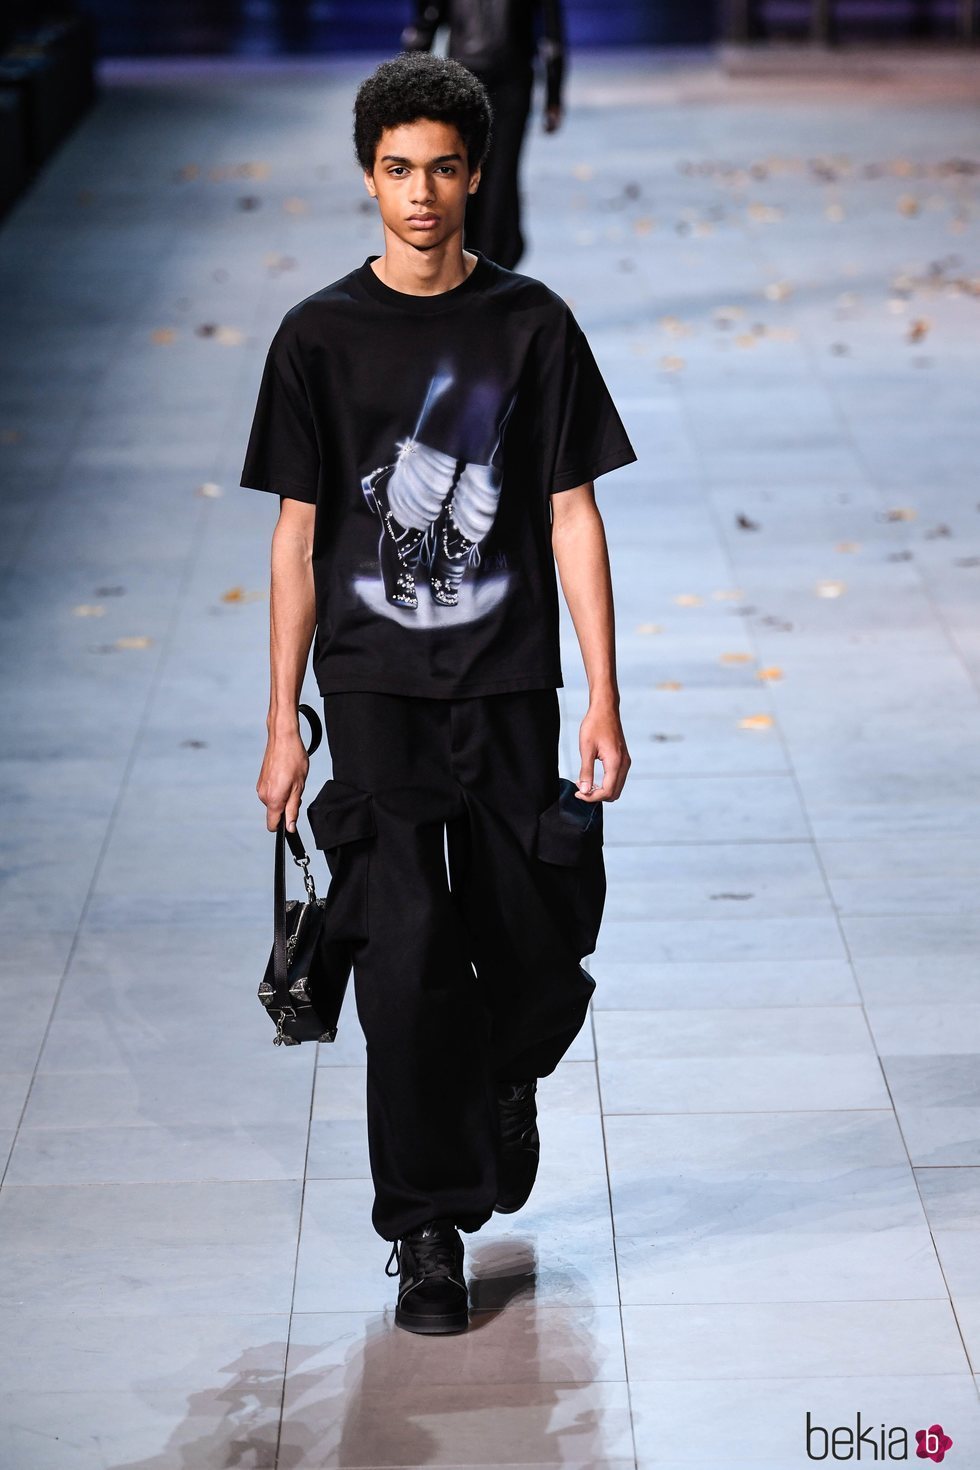 Modelo de Louis Vuitton con un camiseta estampada con los pies de Michael Jackson haciendo el Moon Walker